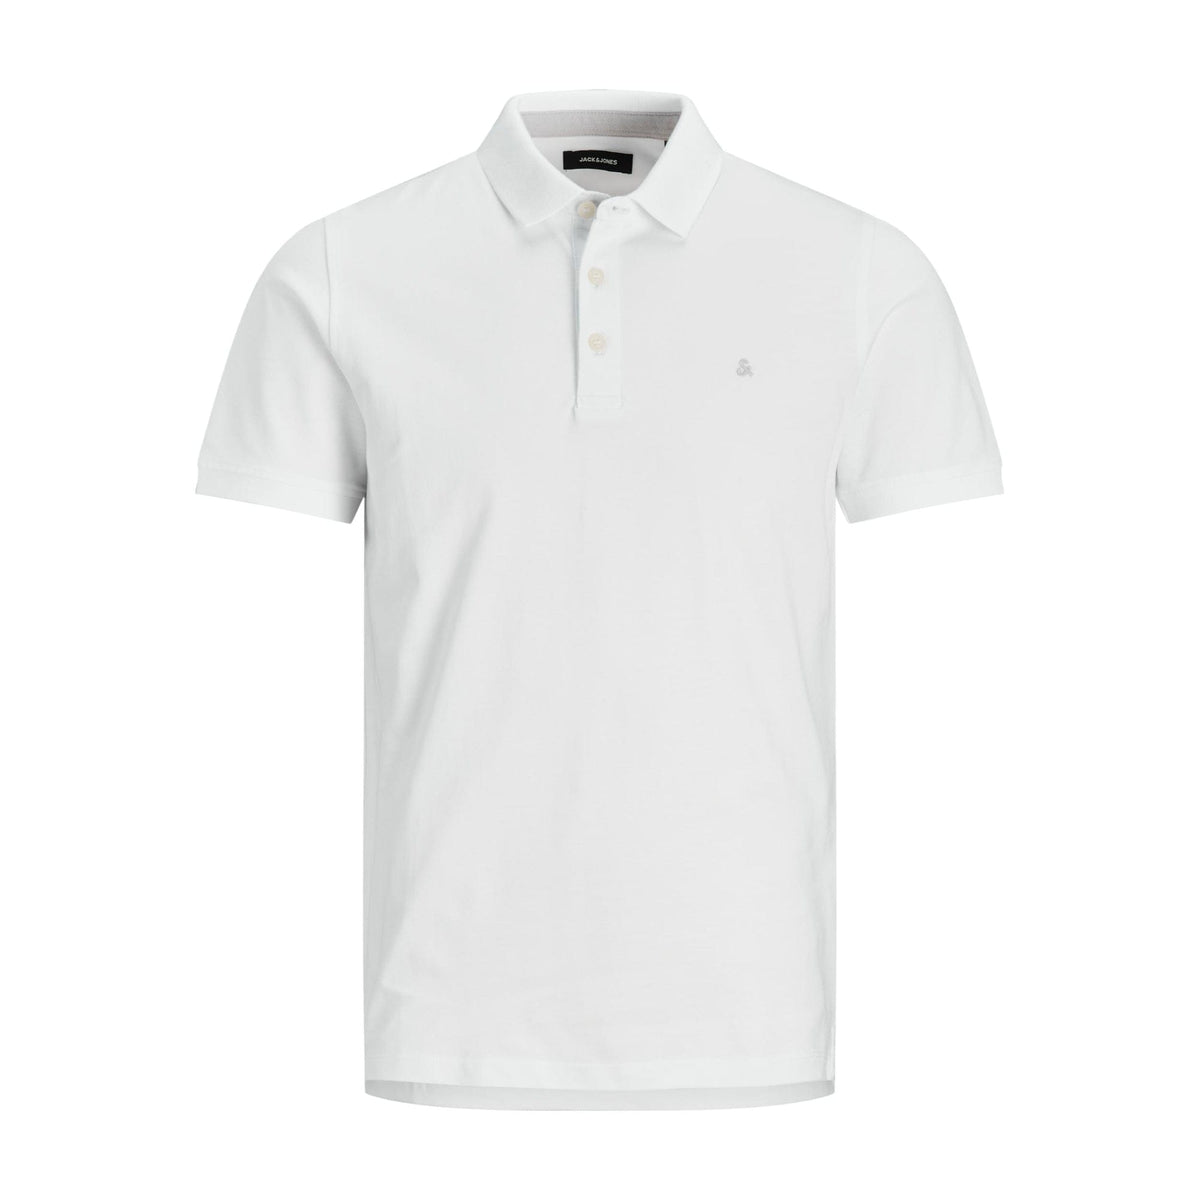 Jack &amp; Jones Polo Shirts Jack &amp; Jones White Classic Plain Polo Shirt